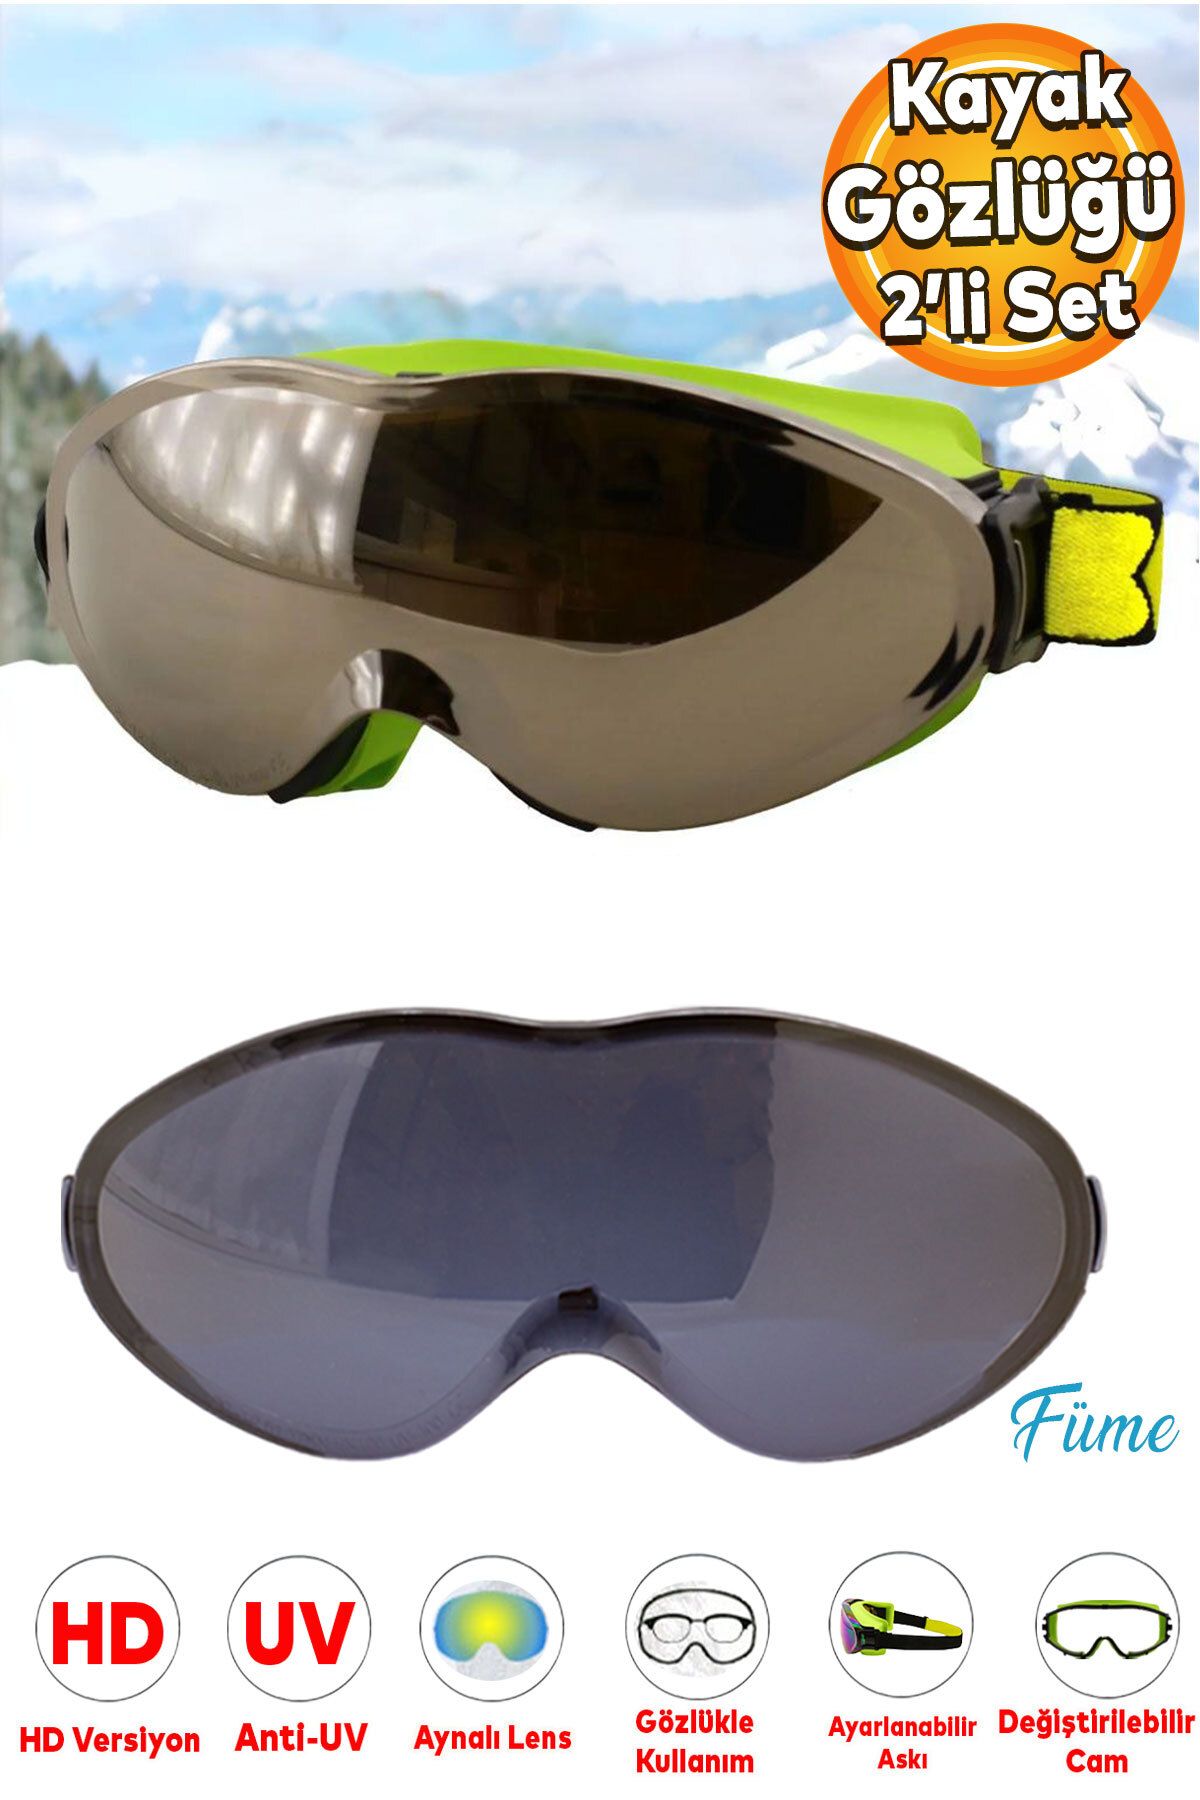 Badem10 Bellasimo Kayak Gözlüğü Değiştirebilir Camlı Antifog Güneş Kar Gözlük Gümüş 1 Adet Yedek Cam